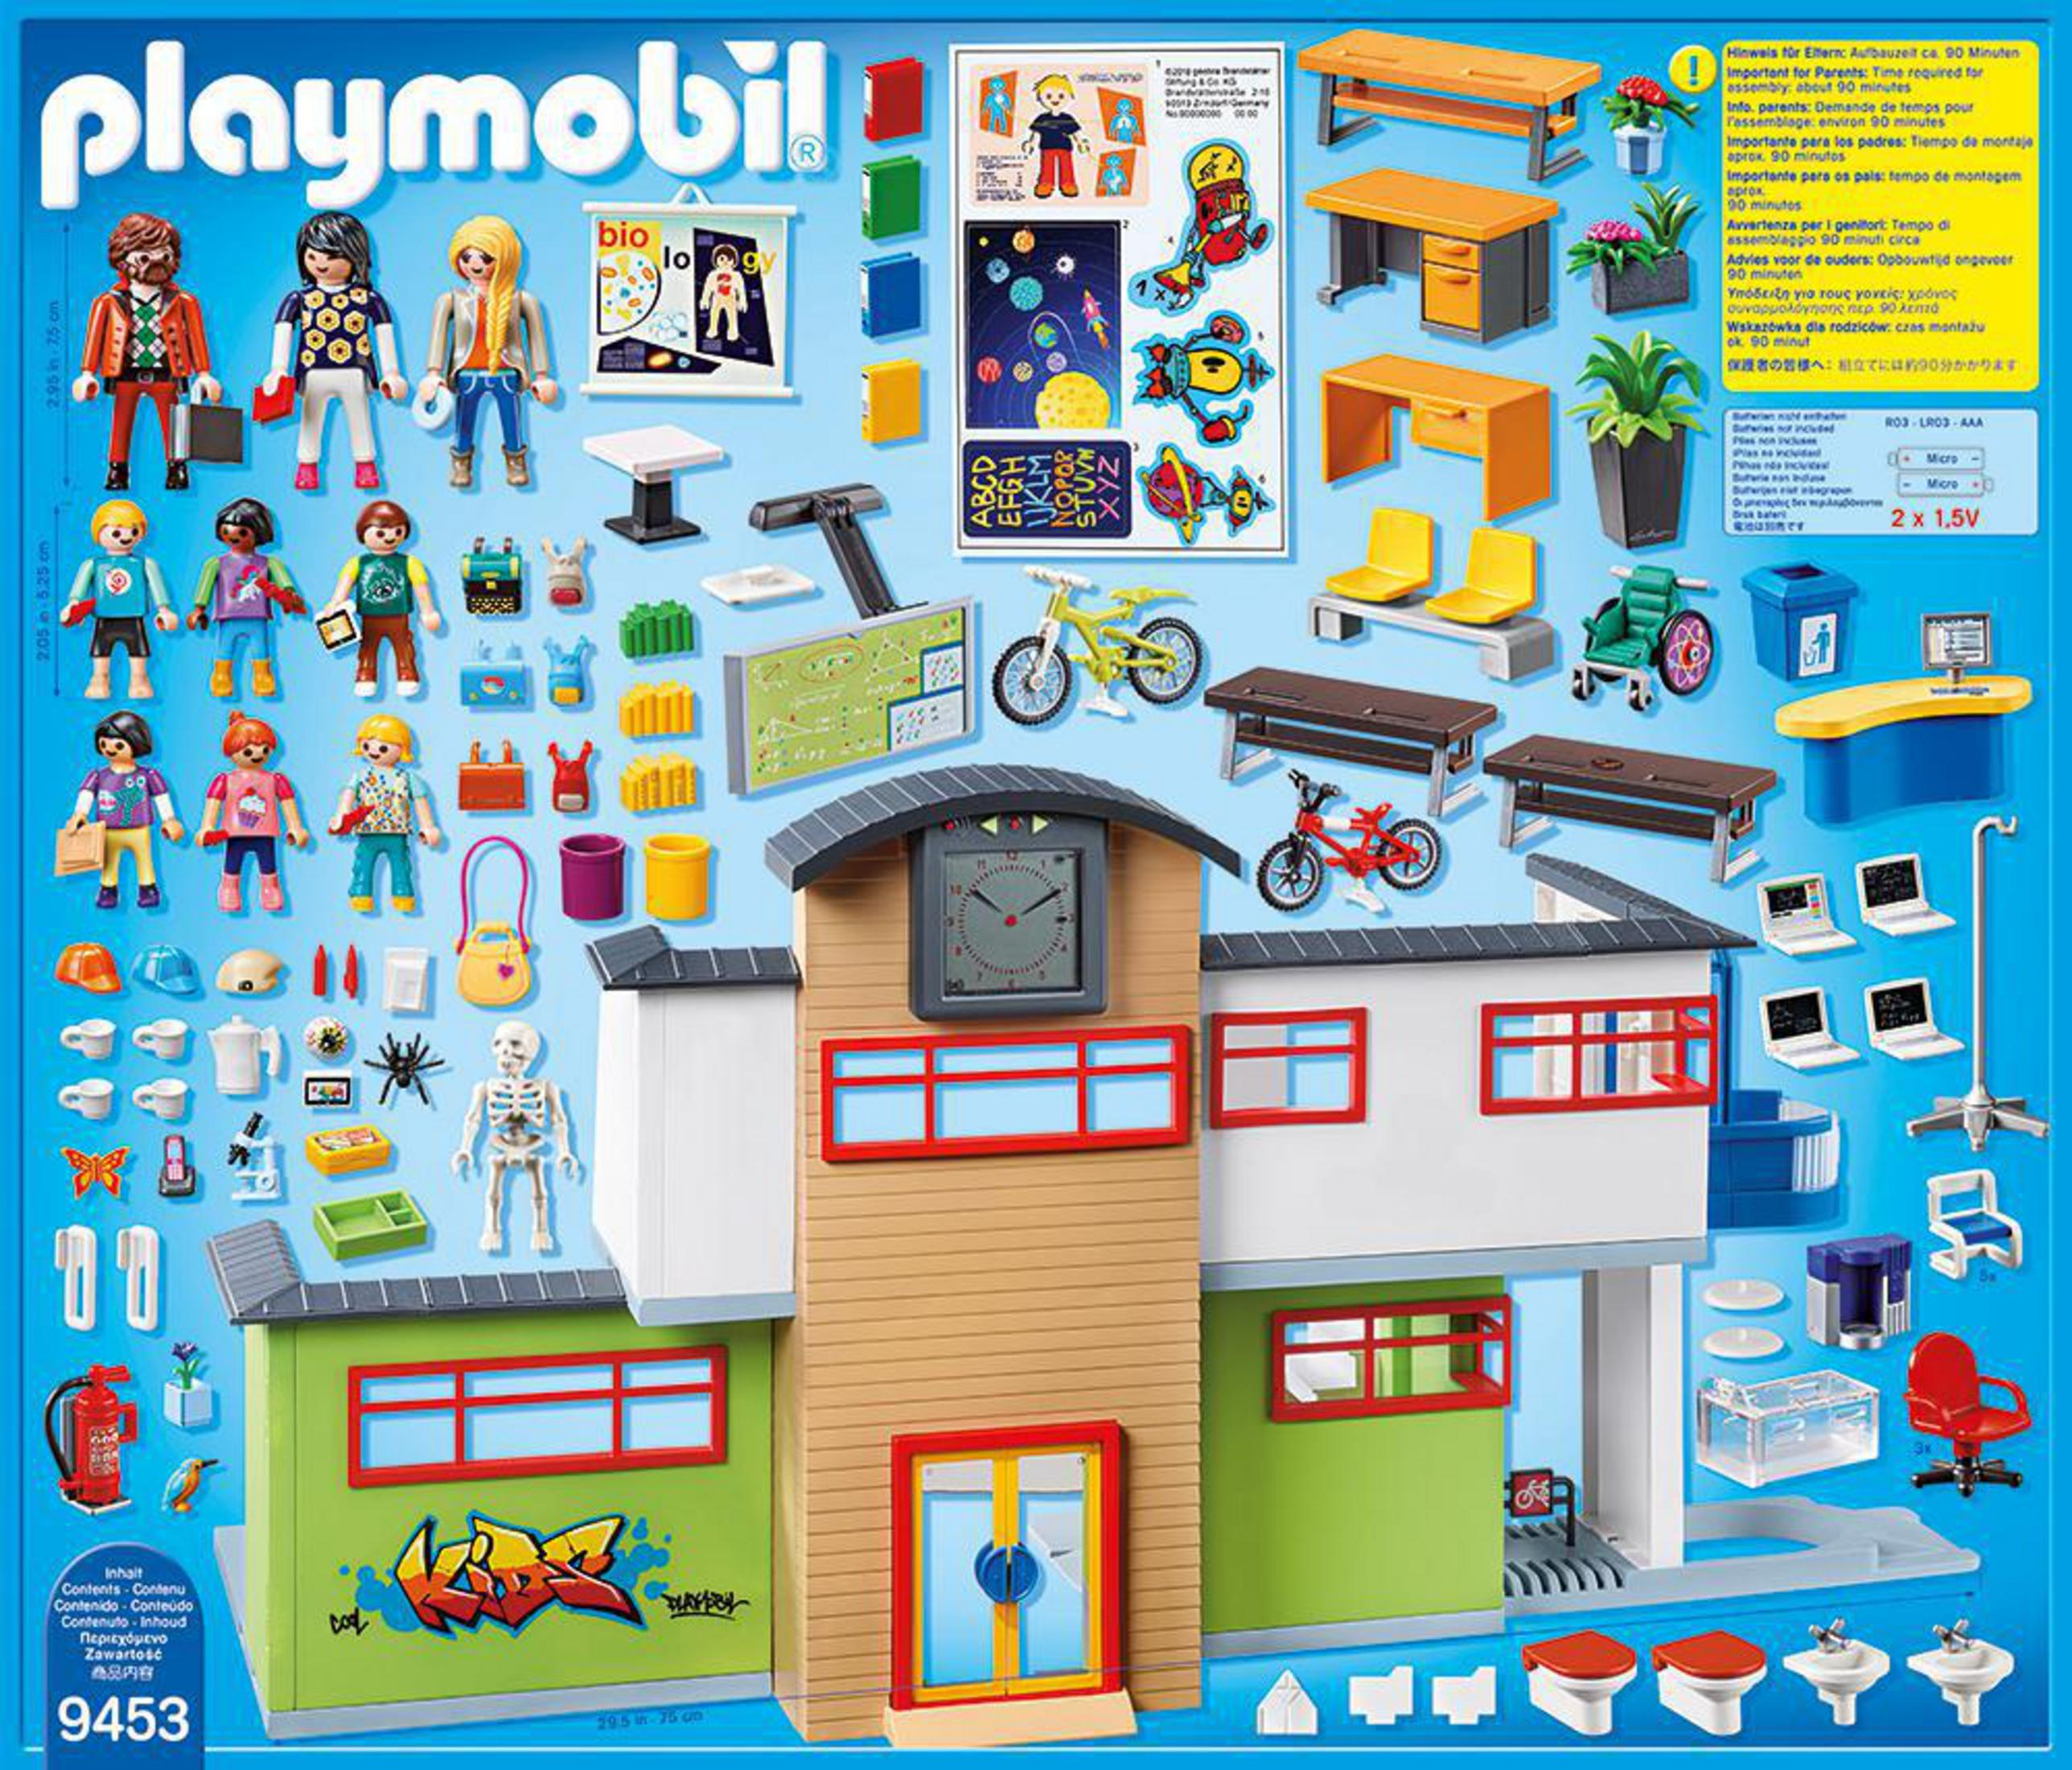 PLAYMOBIL Colegio City Life 9453 Spielzeugsets